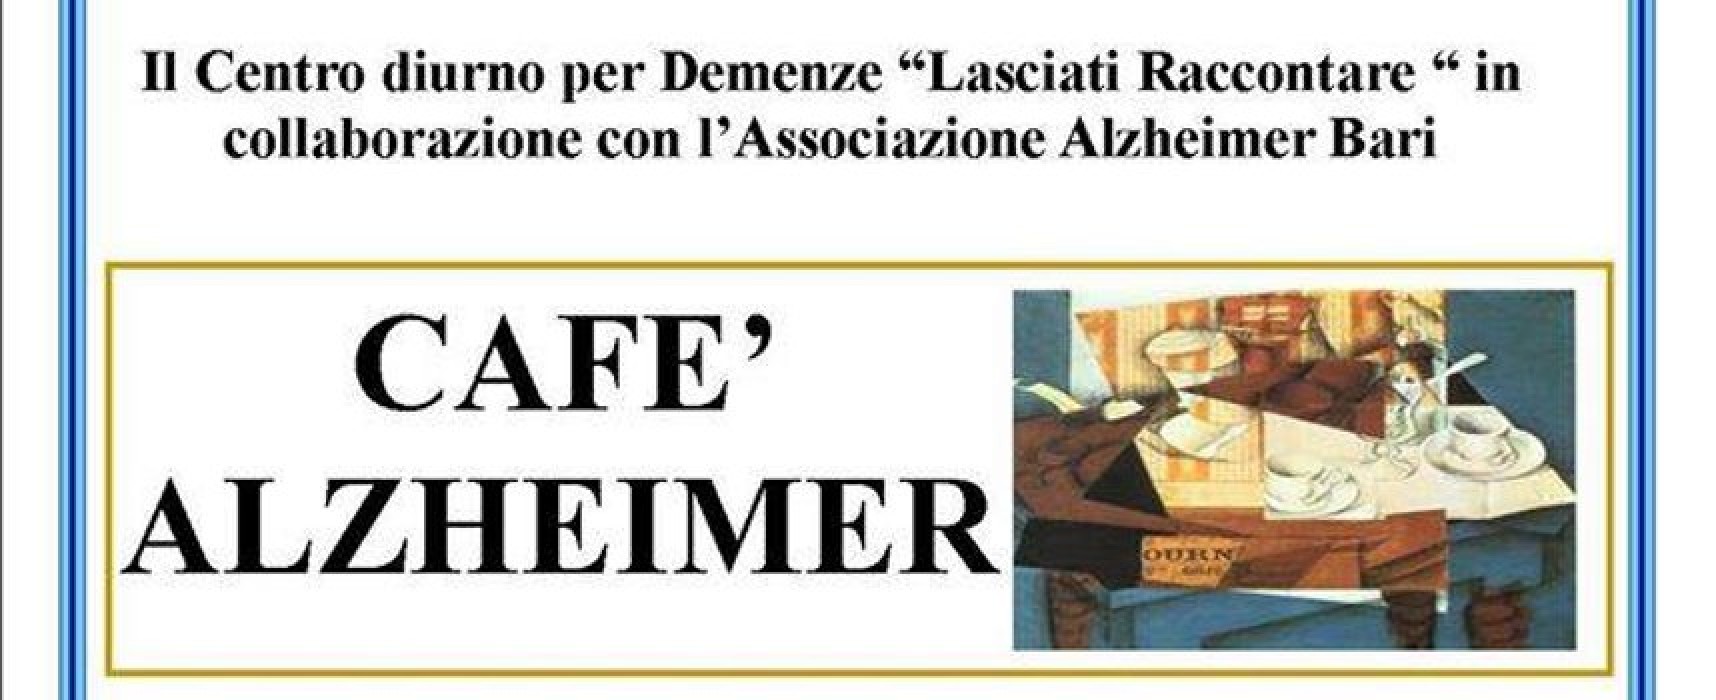 Presentato il progetto del primo “Cafè Alzheimer” dal centro diurno “Lasciati raccontare”